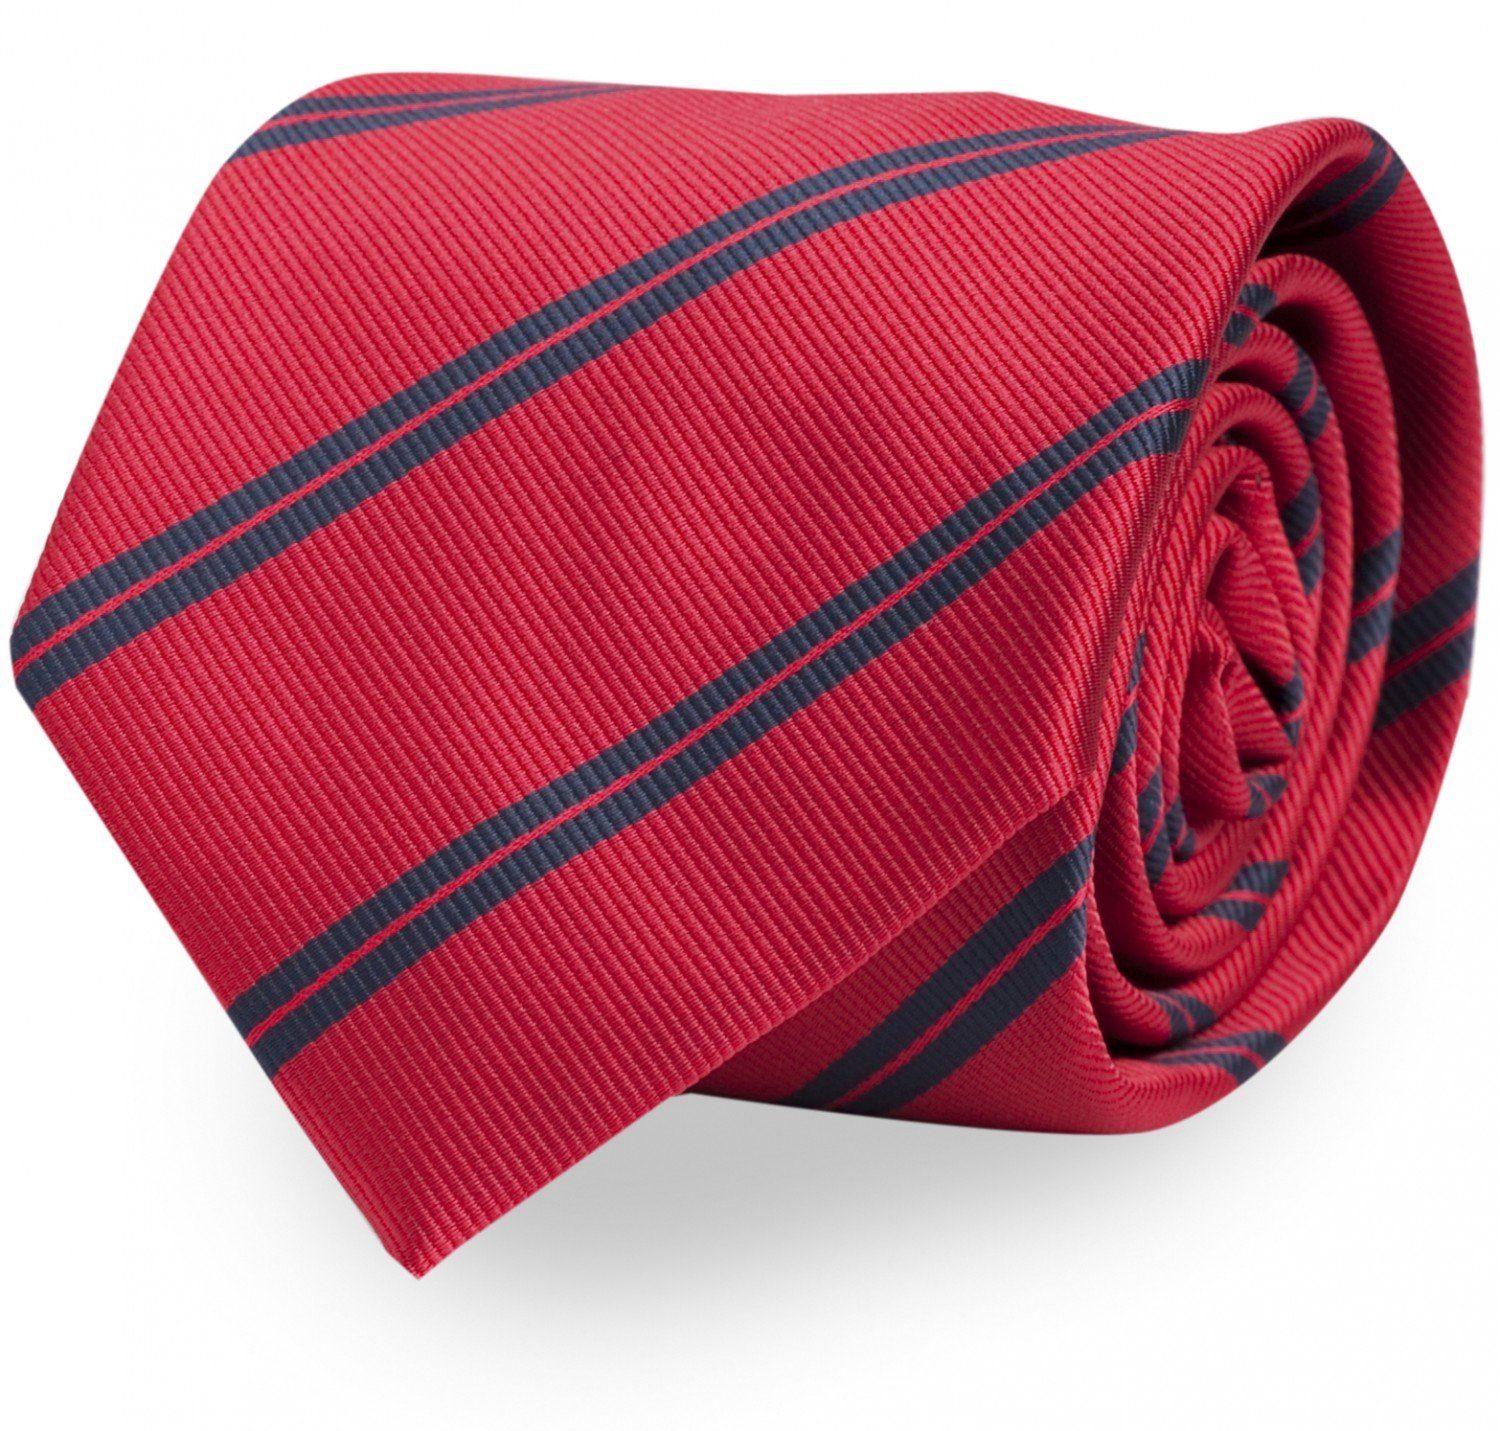 Fabio Farini Krawatte Herren Krawatte Rot - verschiedene Rote Männer Schlips in 8cm (ohne Box, Gestreift) Breit (8cm), Rot Blau - Calipso Berry/Valhalla